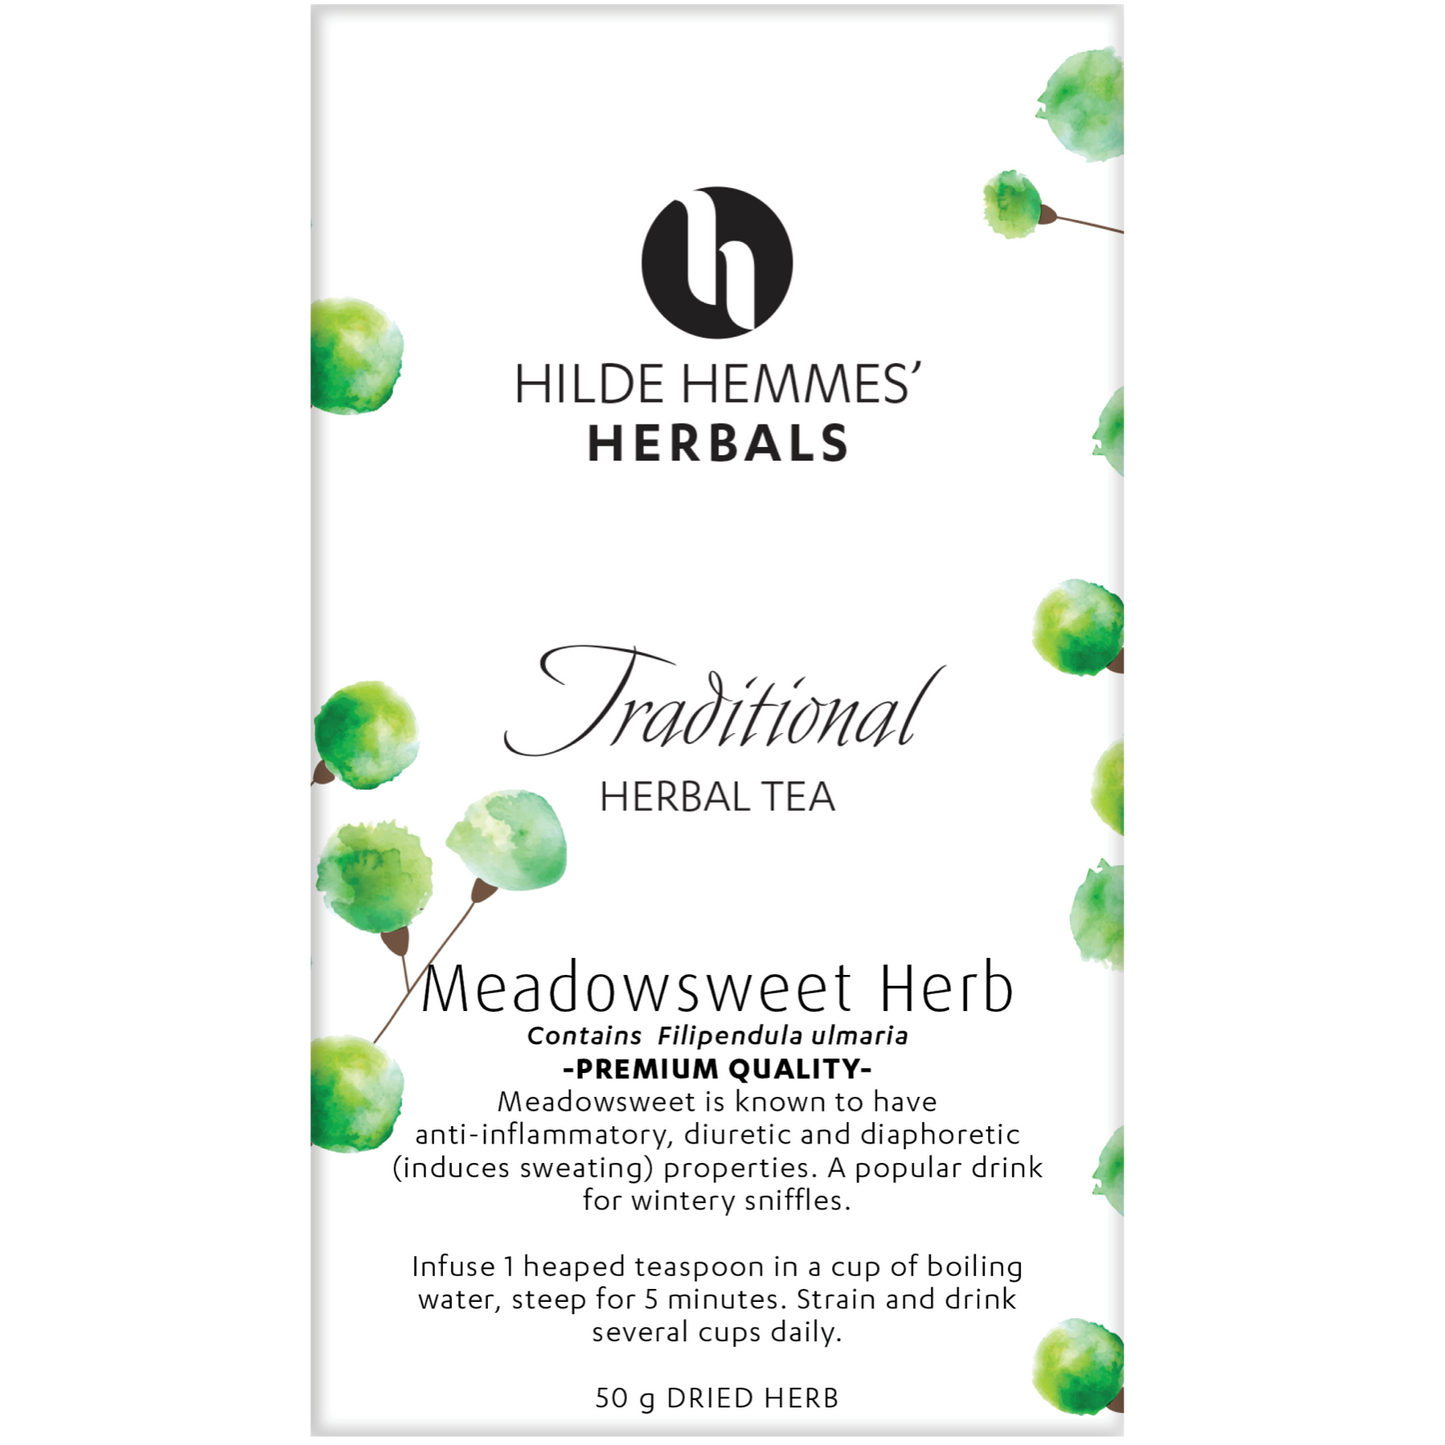 Hilde Hemmes Herbal's Tea 50g, Meadowsweet (Loose Leaf)